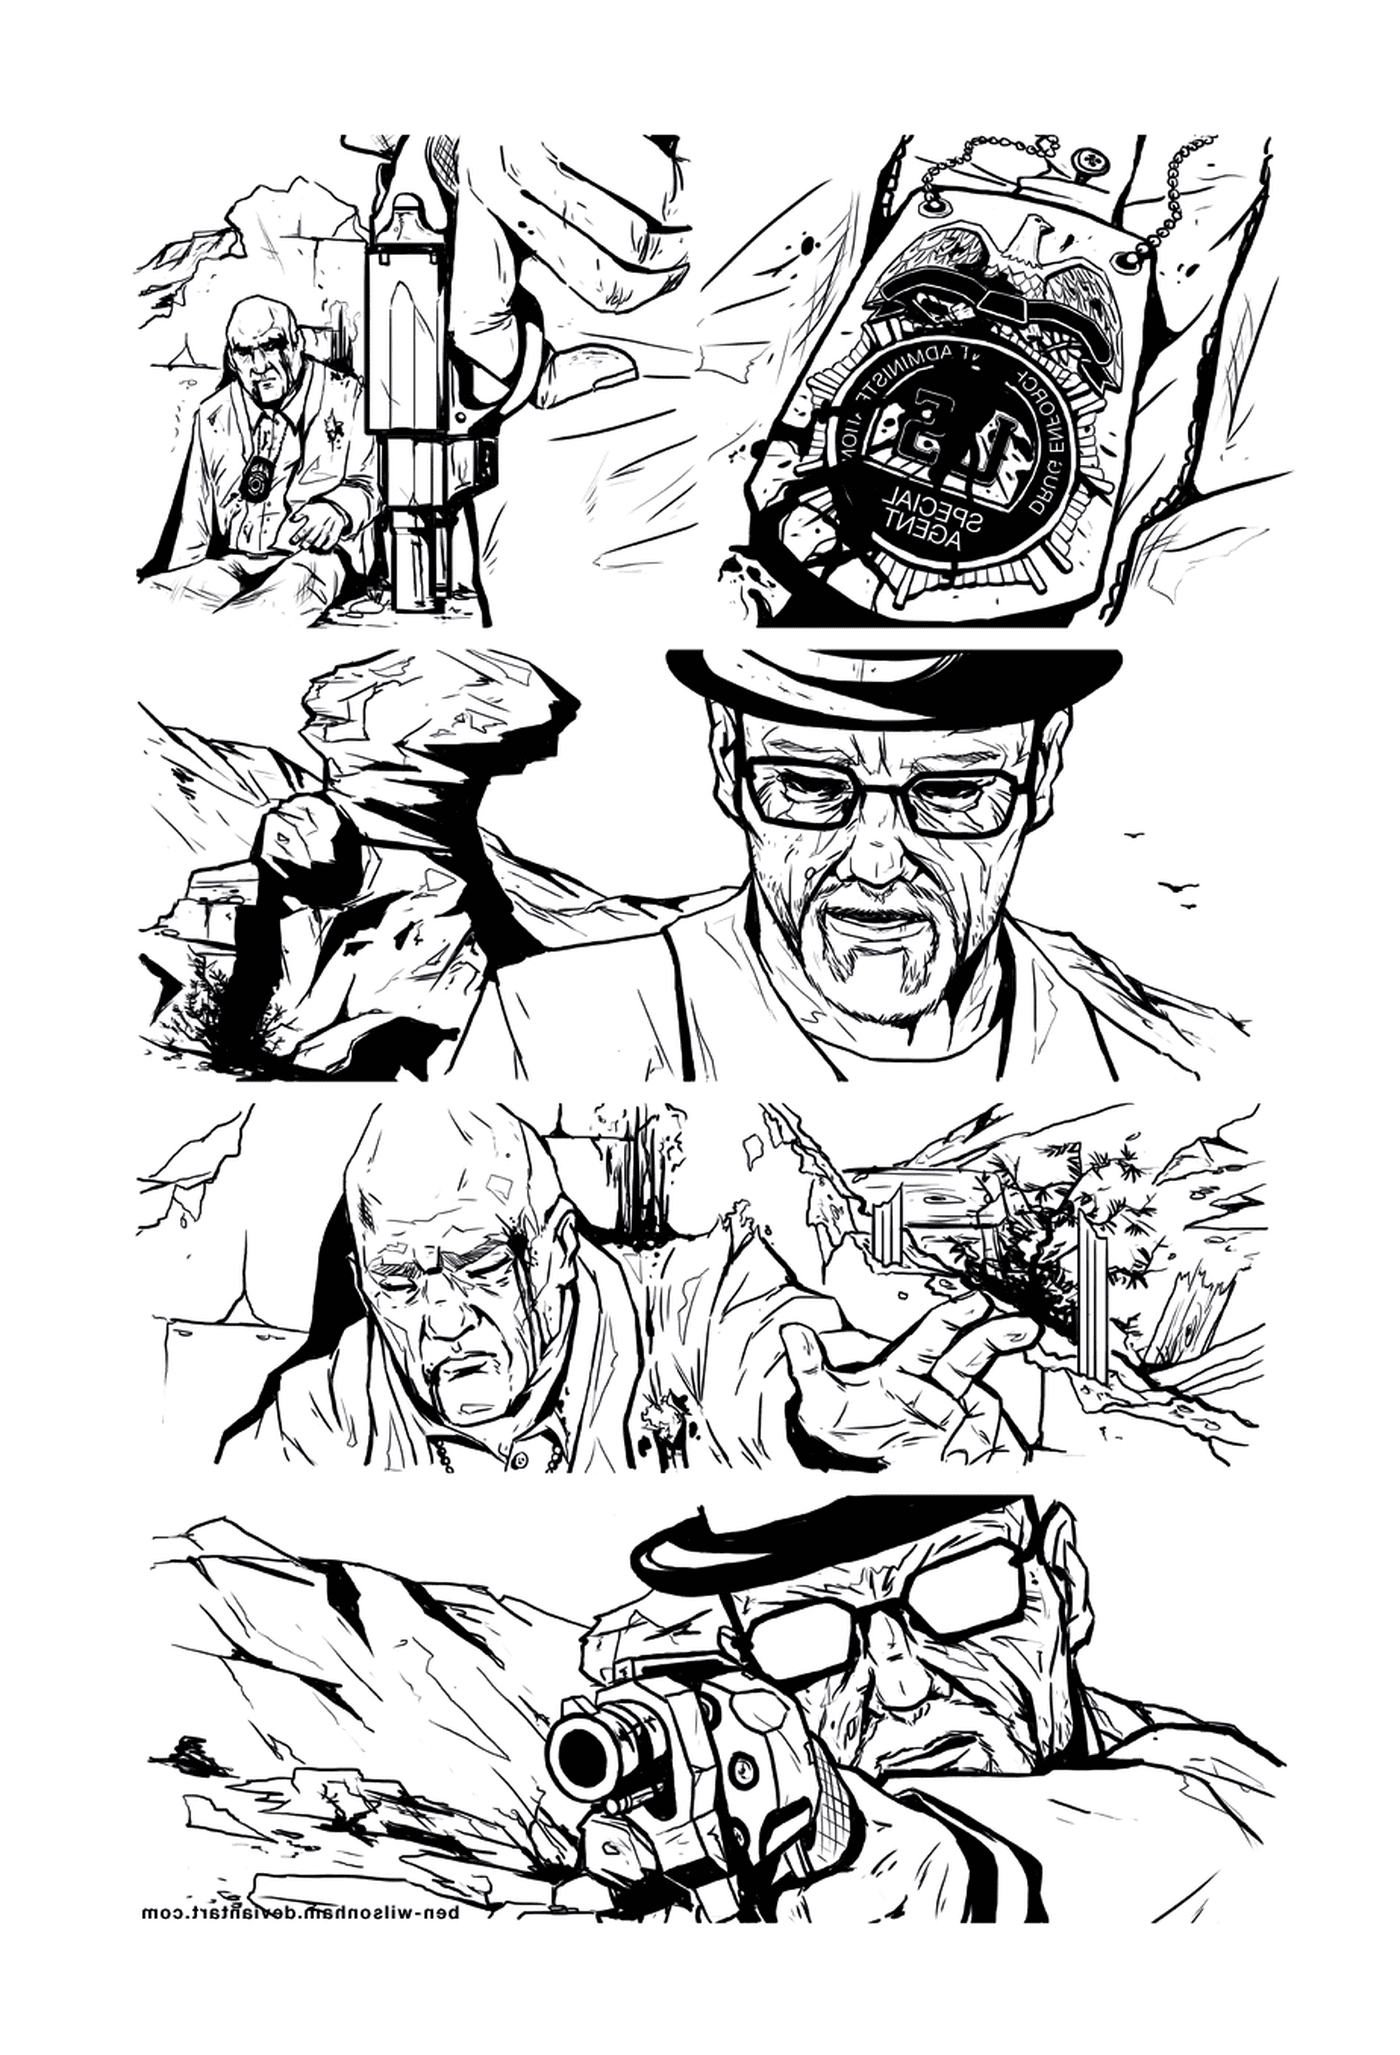  Una serie de dibujos en blanco y negro de un hombre 